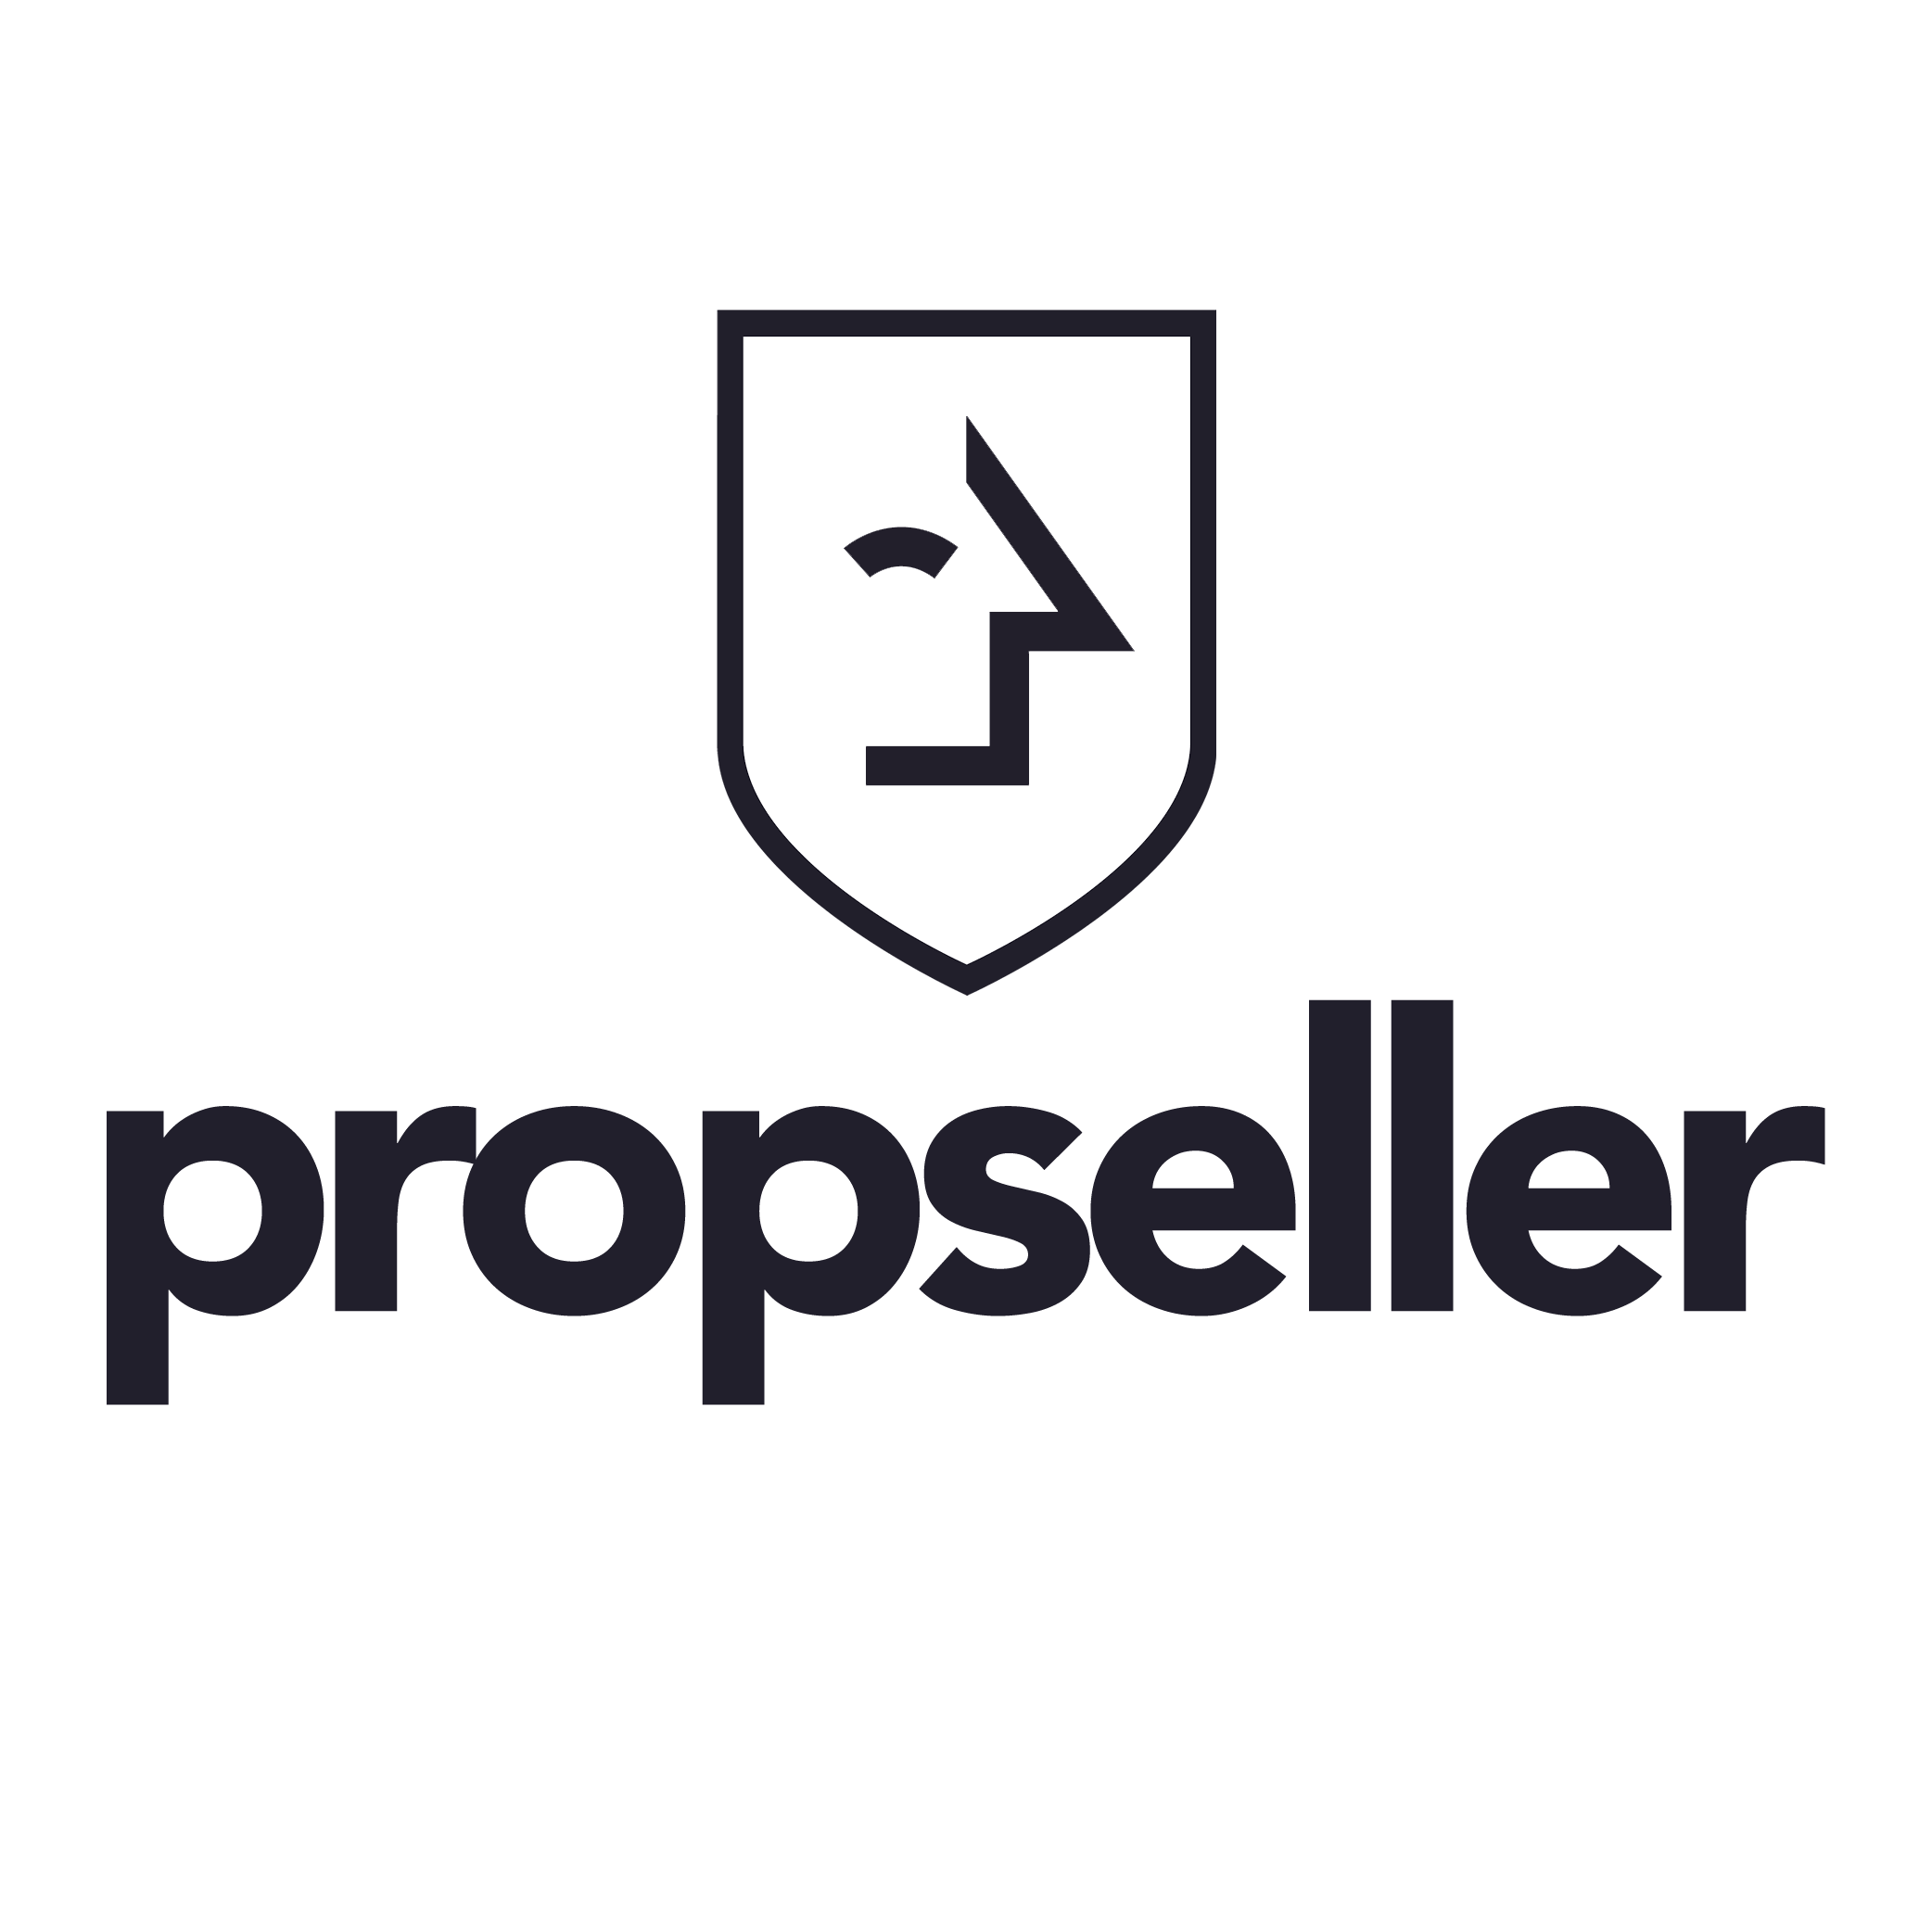 Propseller Pte. Ltd. logo